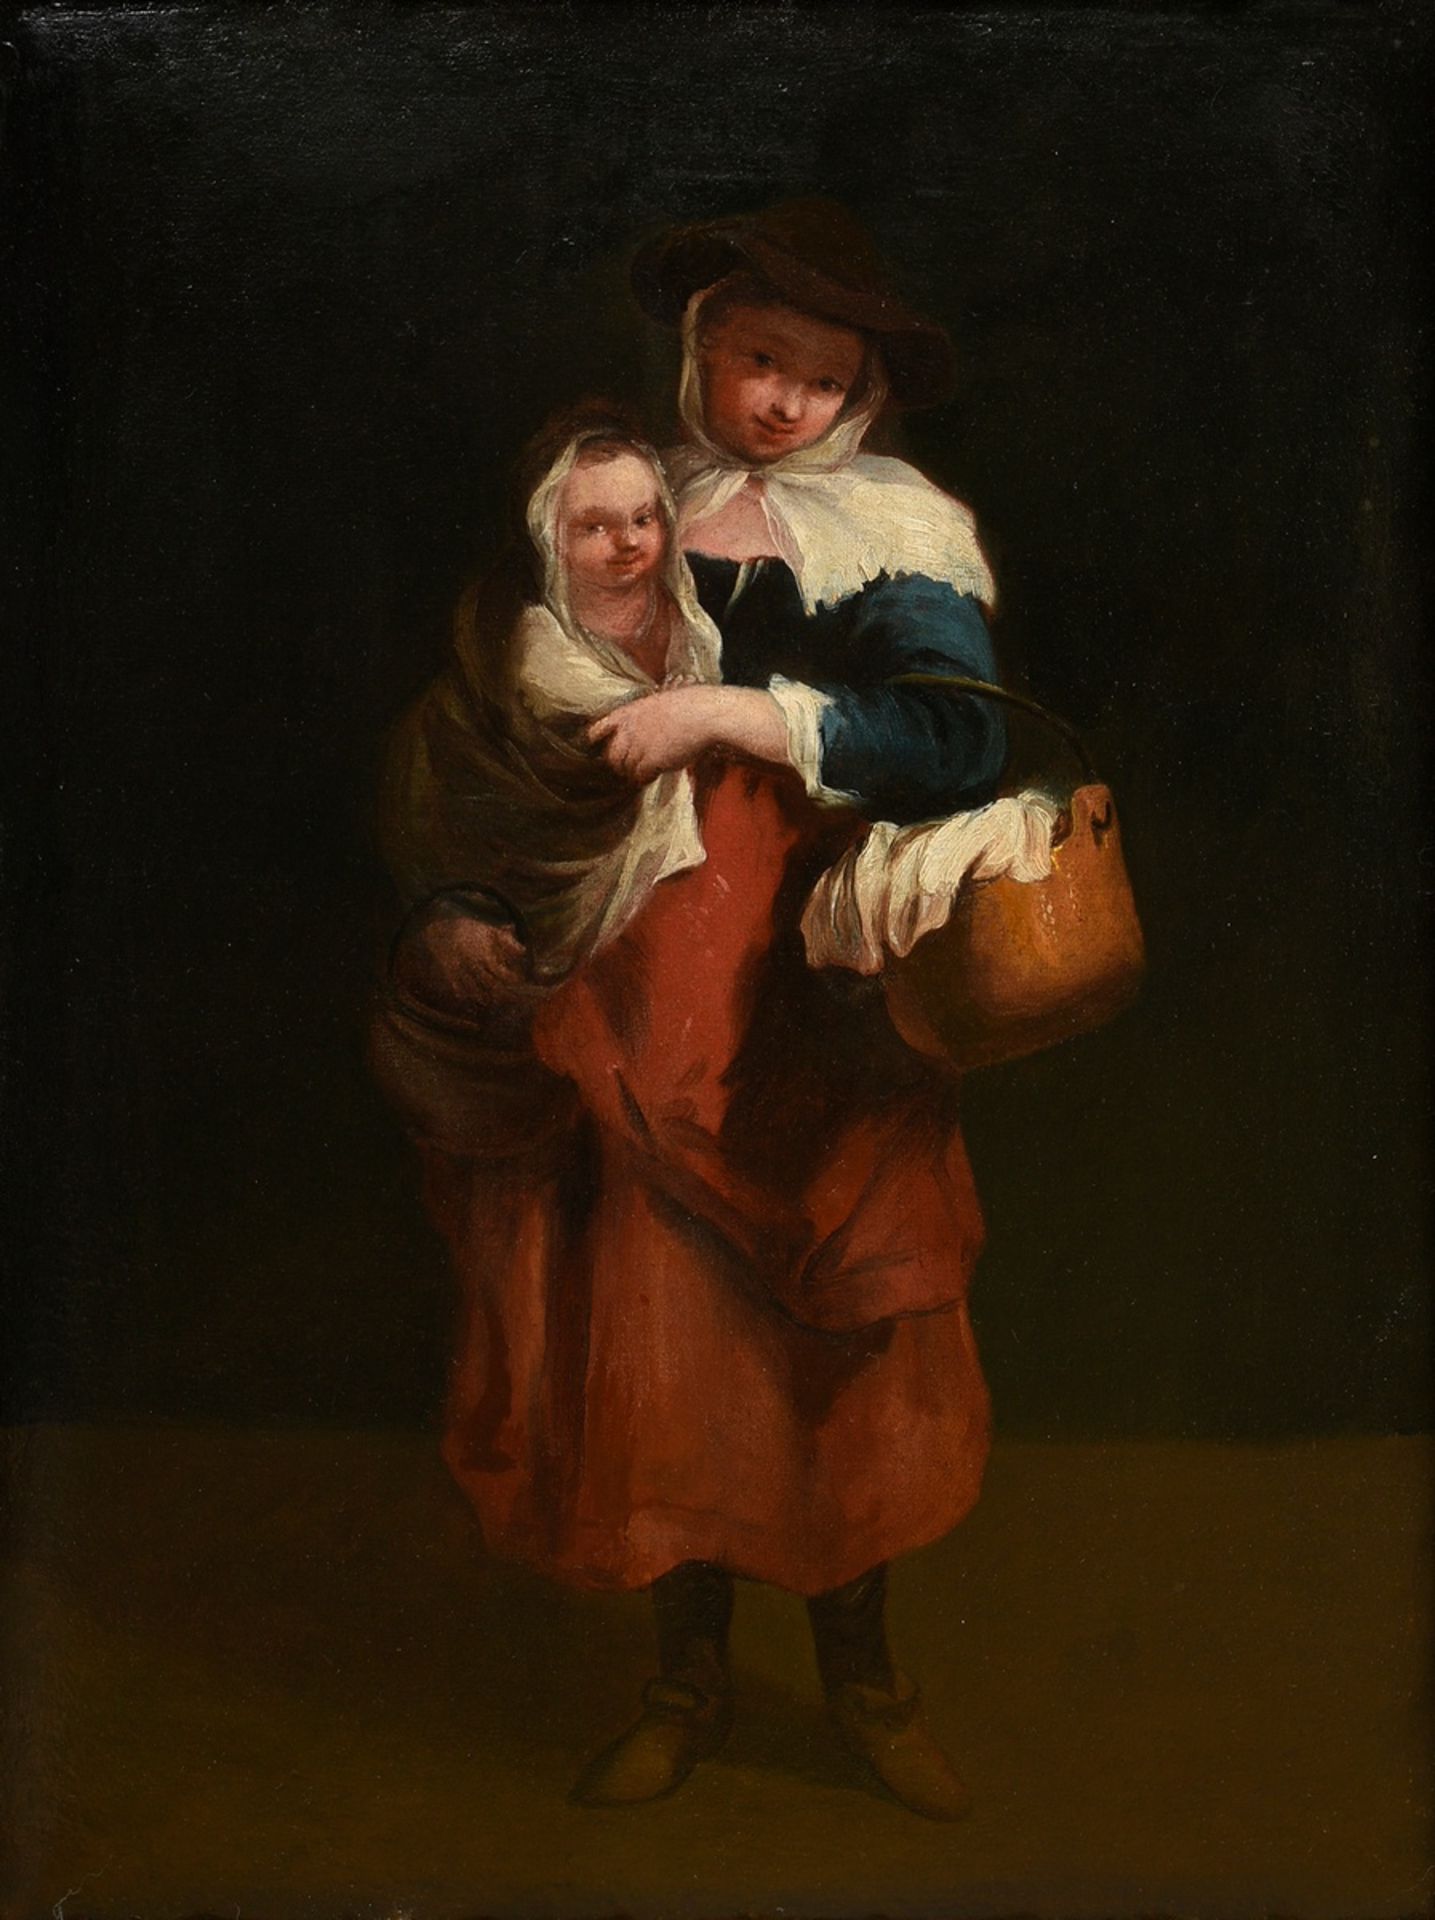 Unbekannter Künstler des 18.Jh. "Mutter und Kind", Öl/Leinwand doubliert, 61x47,5cm (m.R. 80,5x66,6